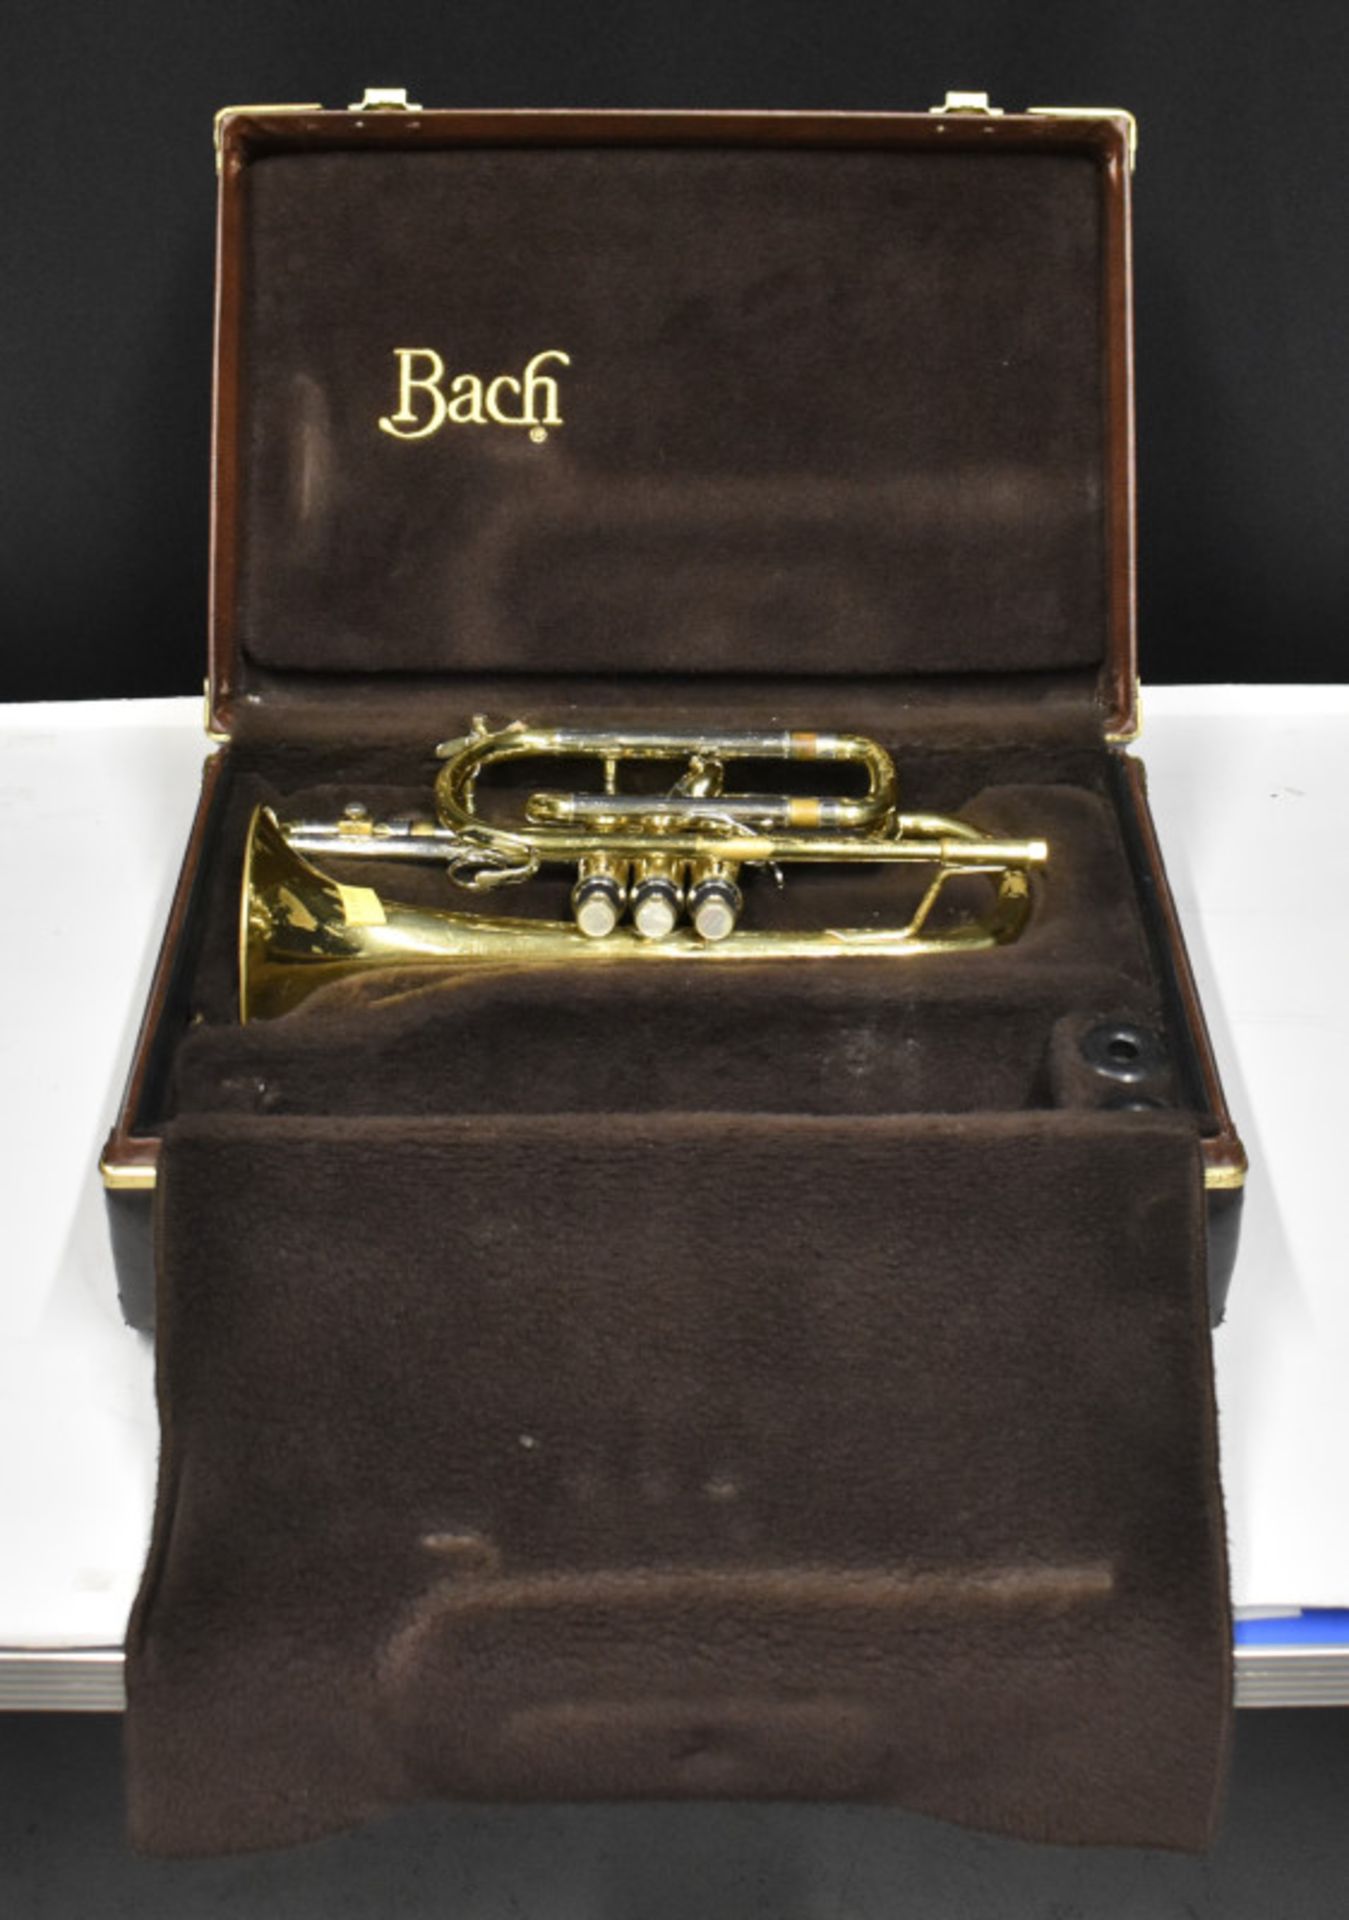 Bach Stradivarius Model 184 Cornet in case - Serial No. 501127 - Please check photos car